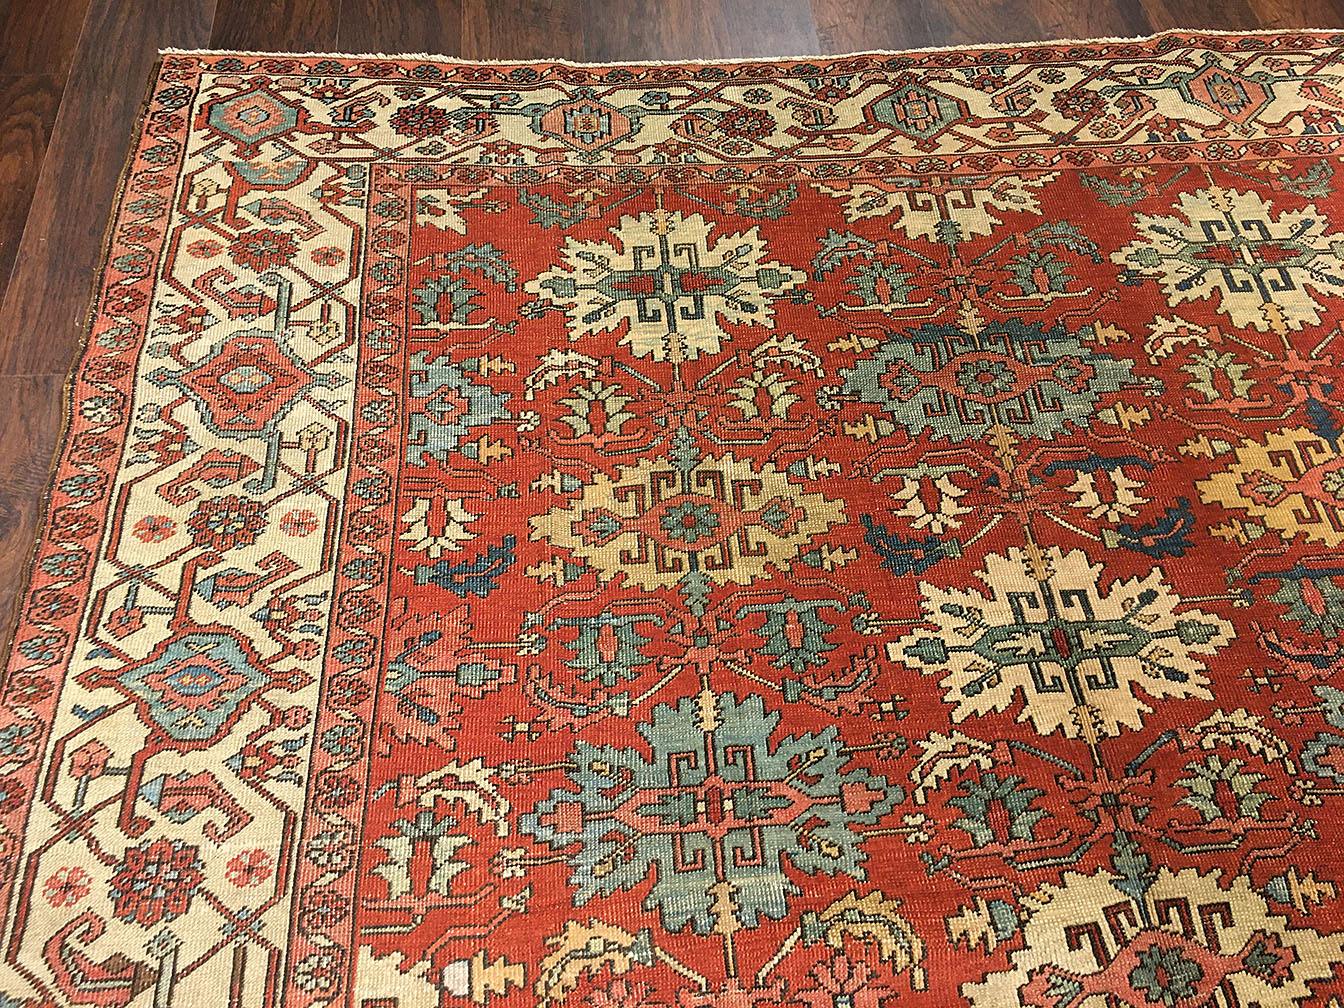 Antique bakshaish Carpet - # 7183